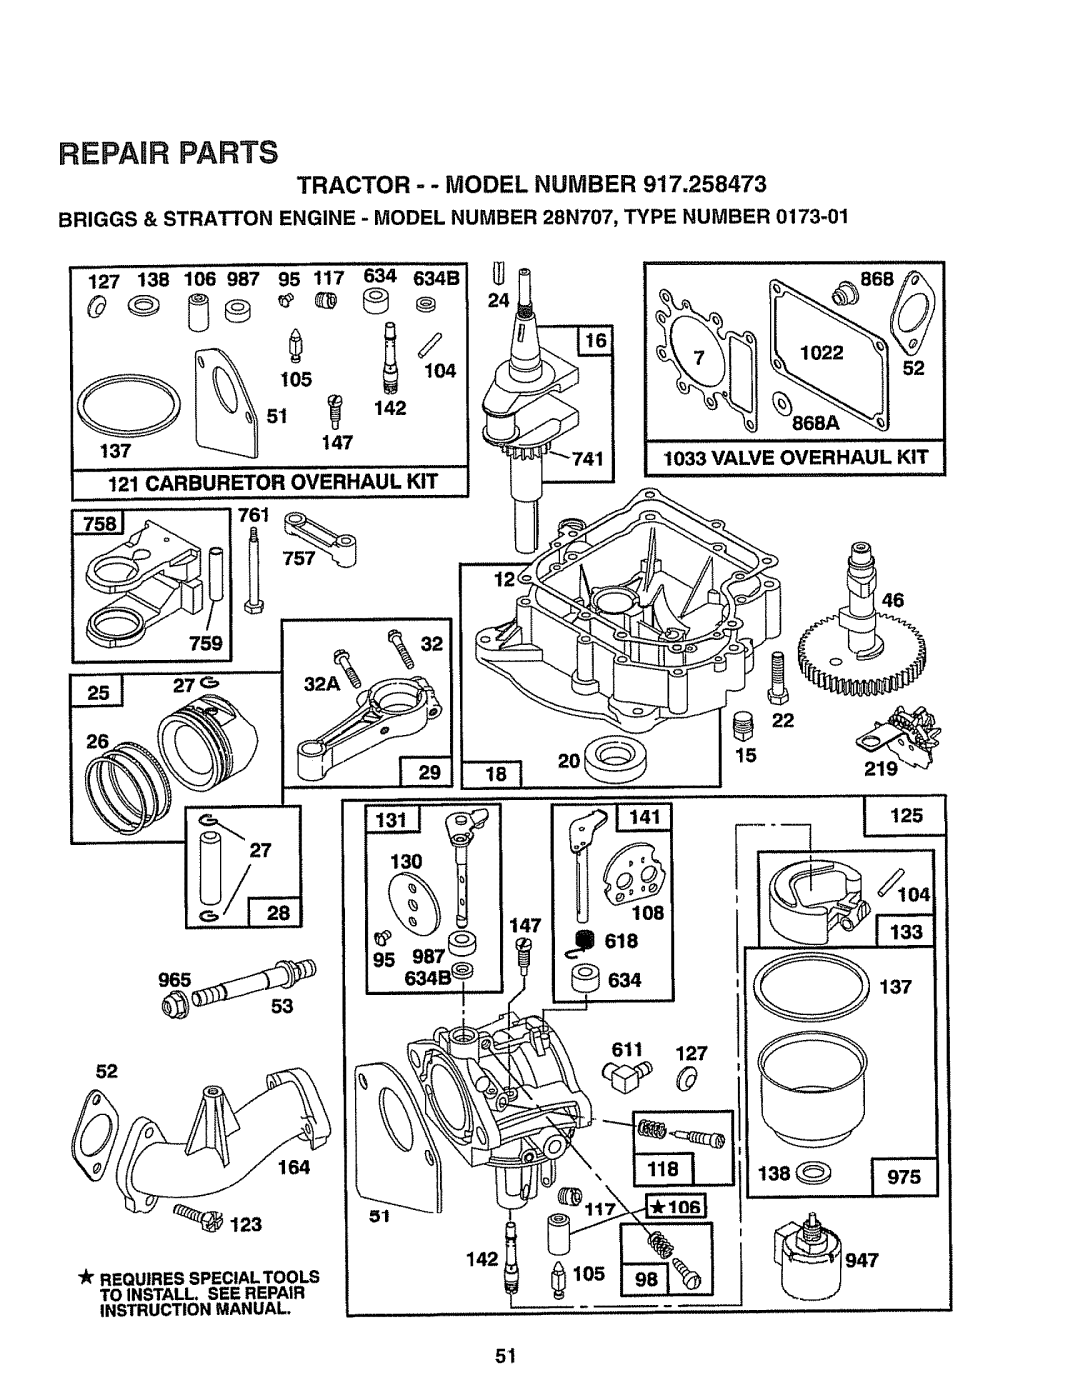 Sears 917.258473 owner manual TRACTOR - - MODEL NUMBER 917,258473, Repair Parts 